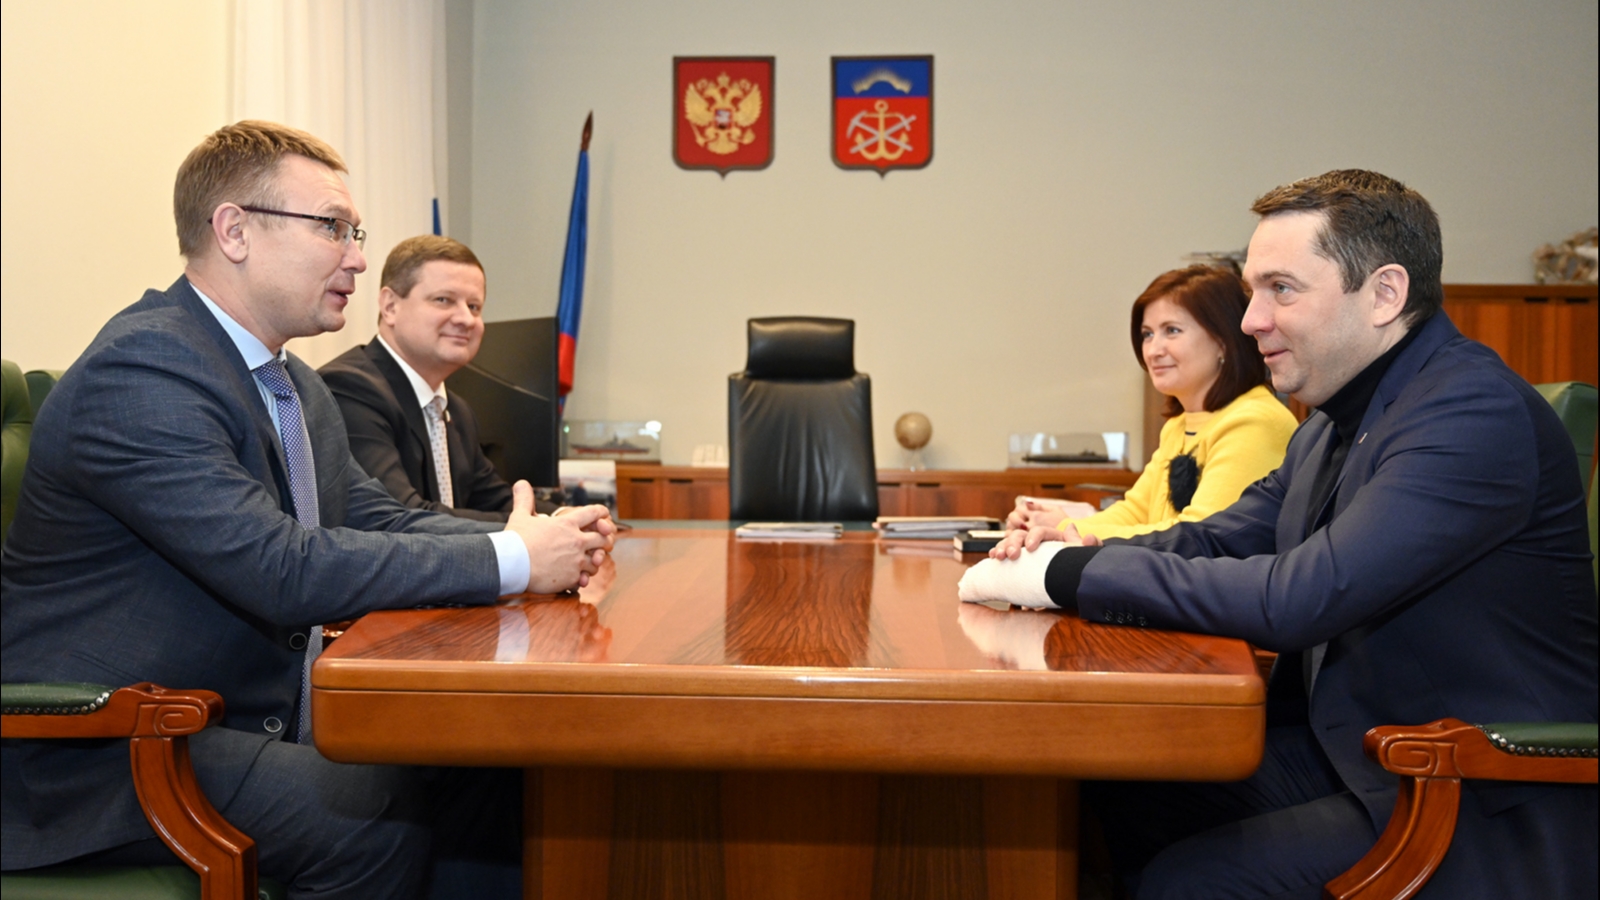 Встреча с улыбками: ЛДПРовец Каргинов заглянул в гости к губернатору Чибису